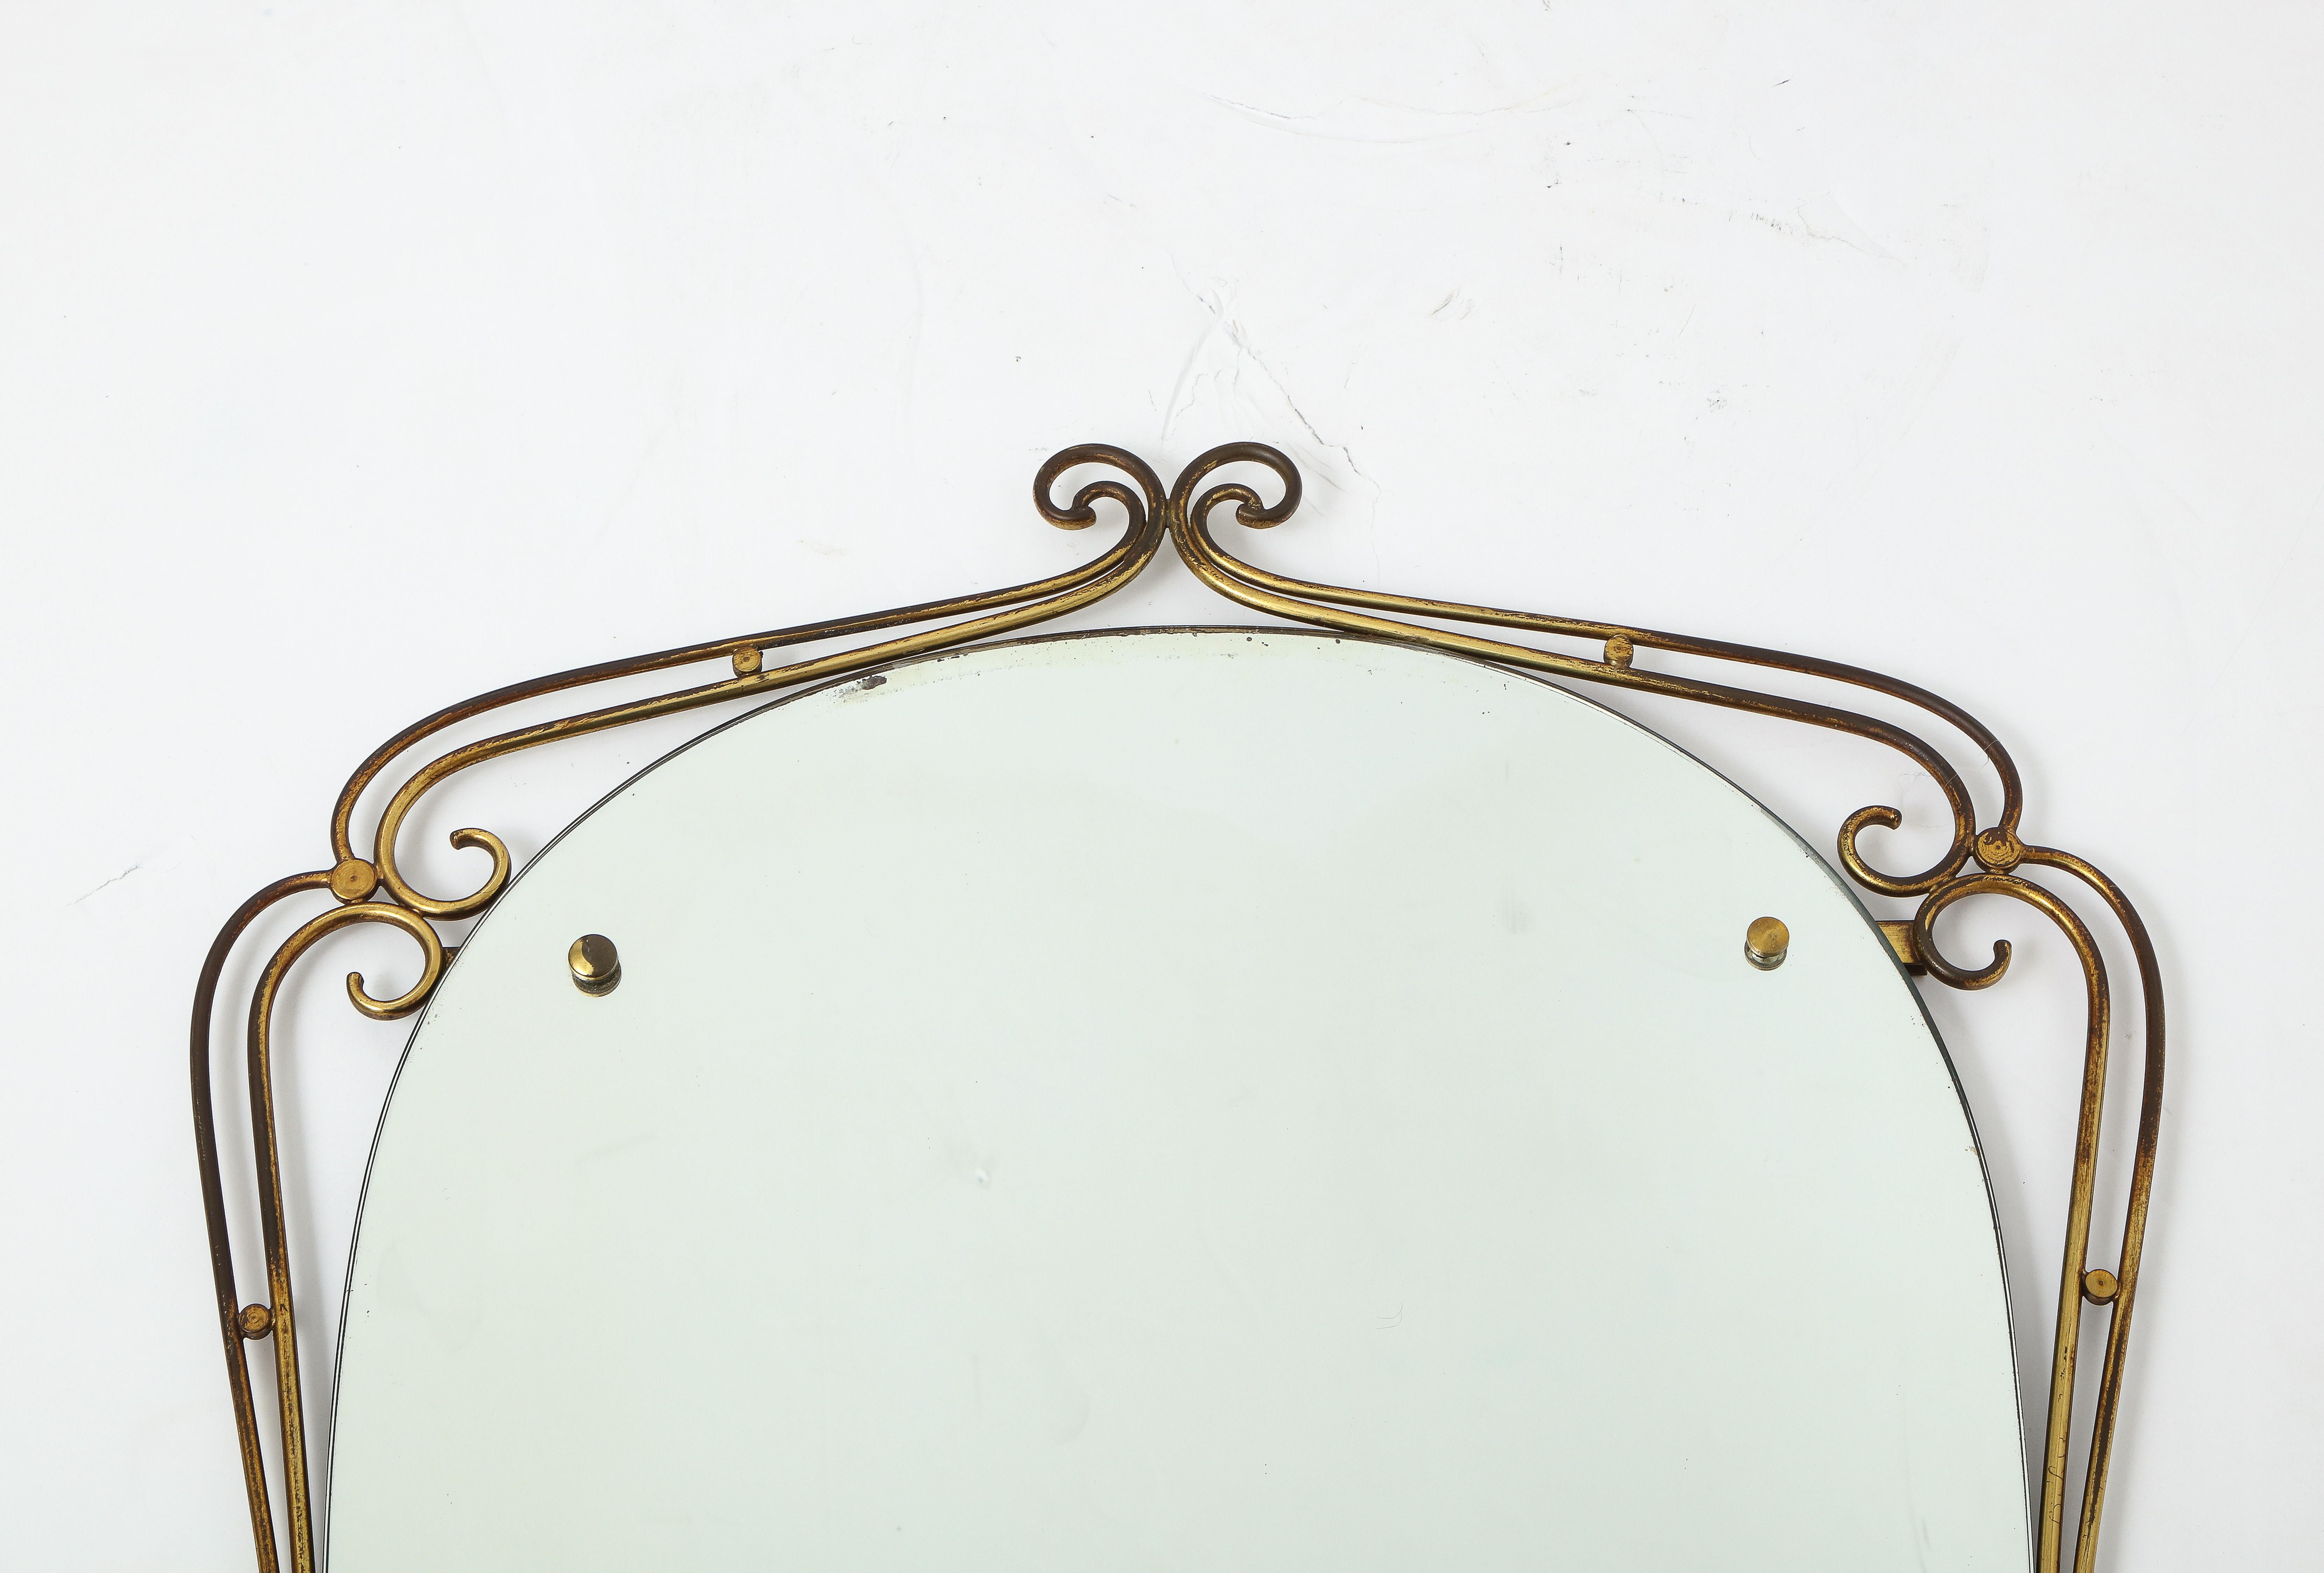 Un miroir italien des années 1950 de forme ovale en laiton avec un motif exubérant et fantaisiste de volutes. 
Italie, vers 1950 
Taille : 39